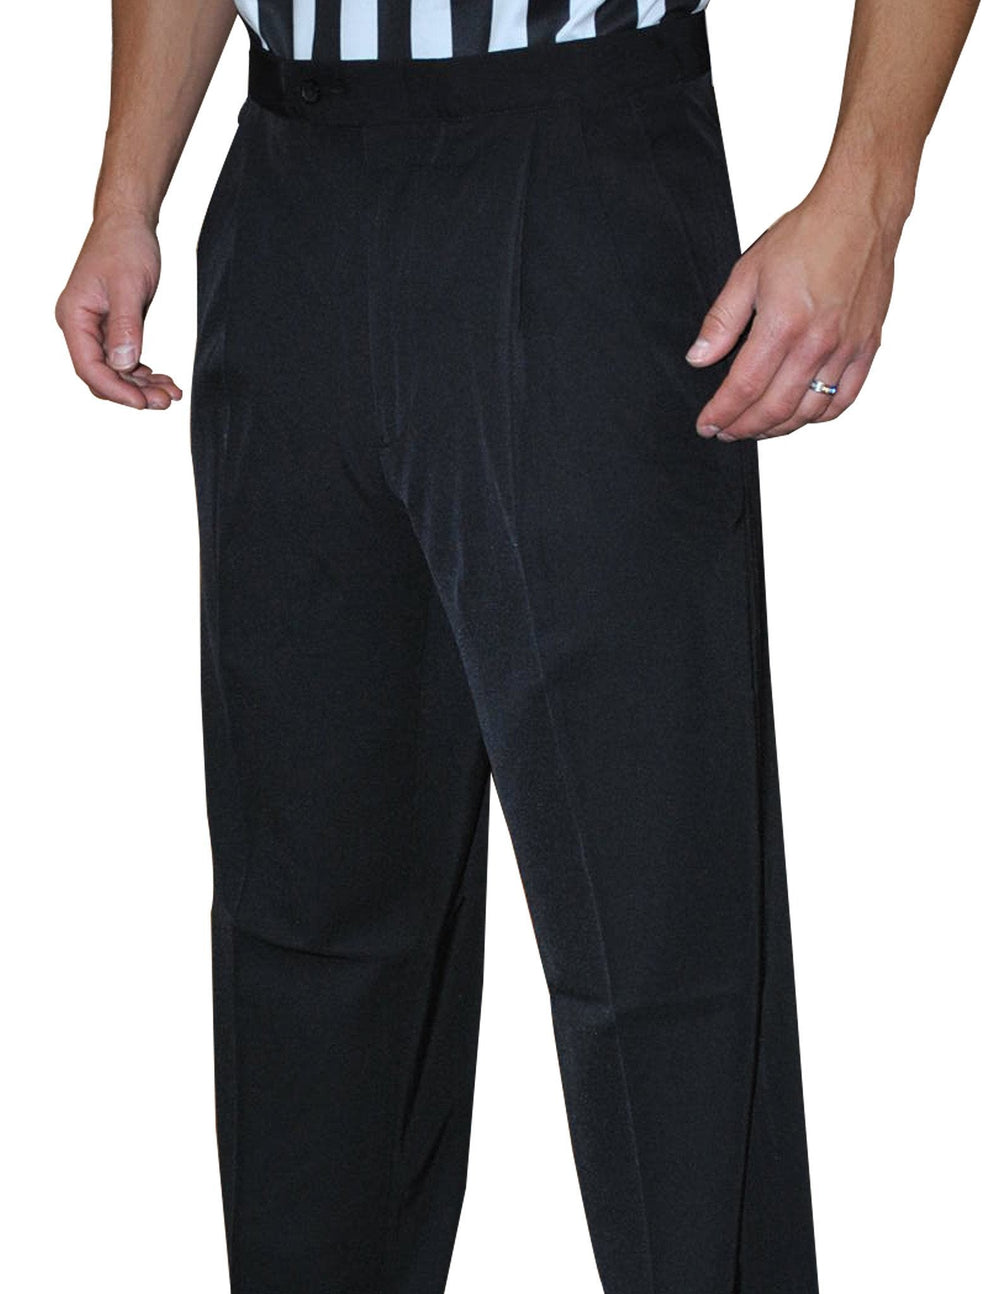 Smitty 4-Way Stretch Pleated Pants w/ Slash Pockets